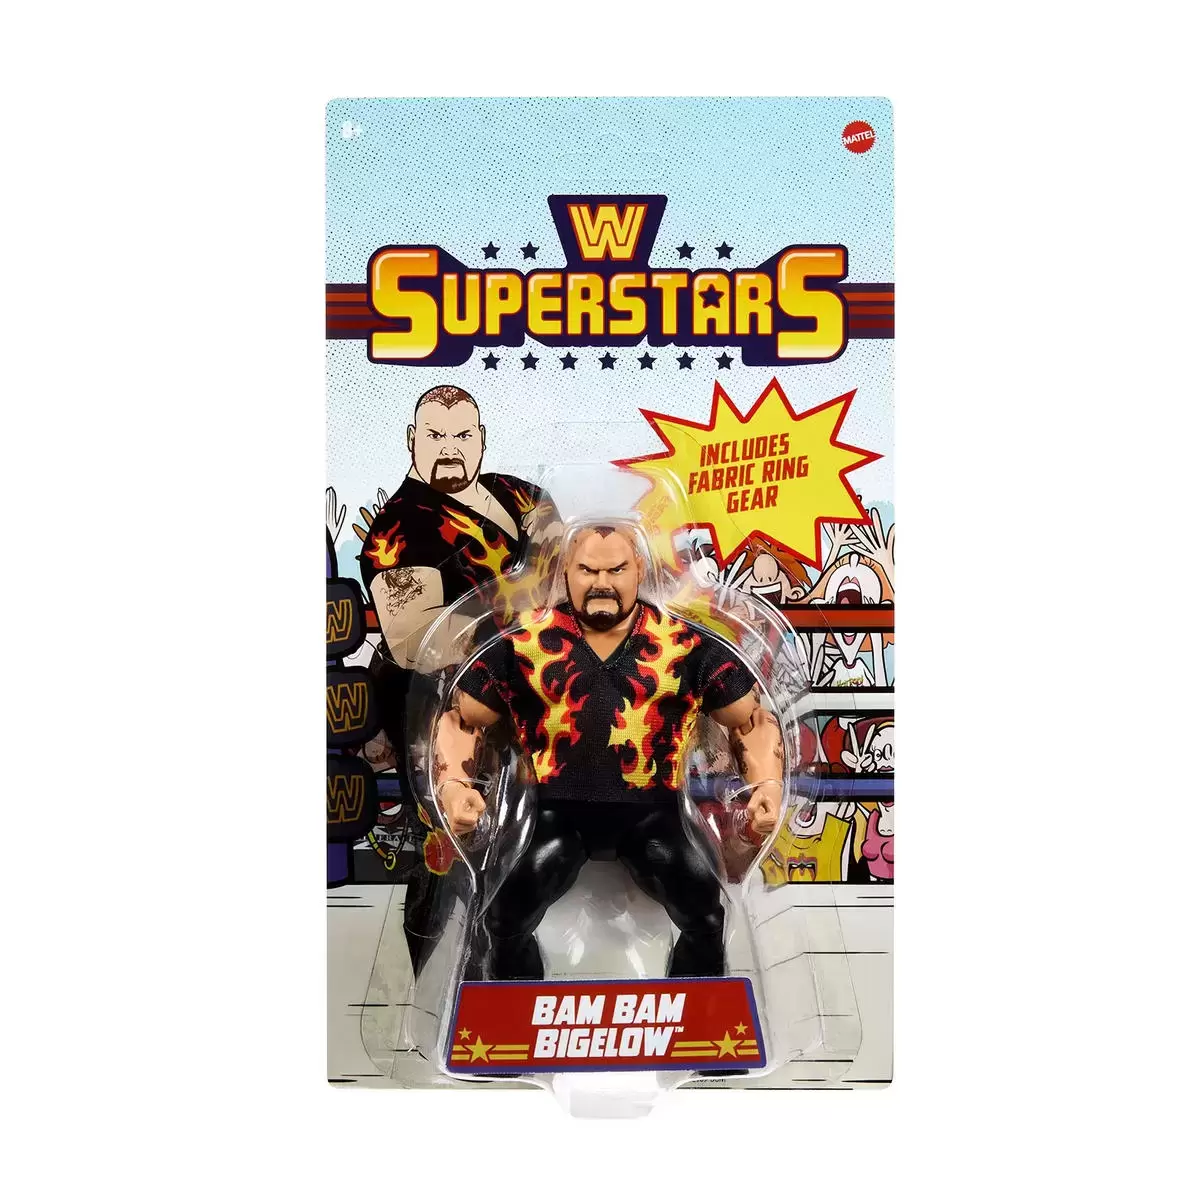 WWE Superstars - Mattel - Bam Bam Bigelow